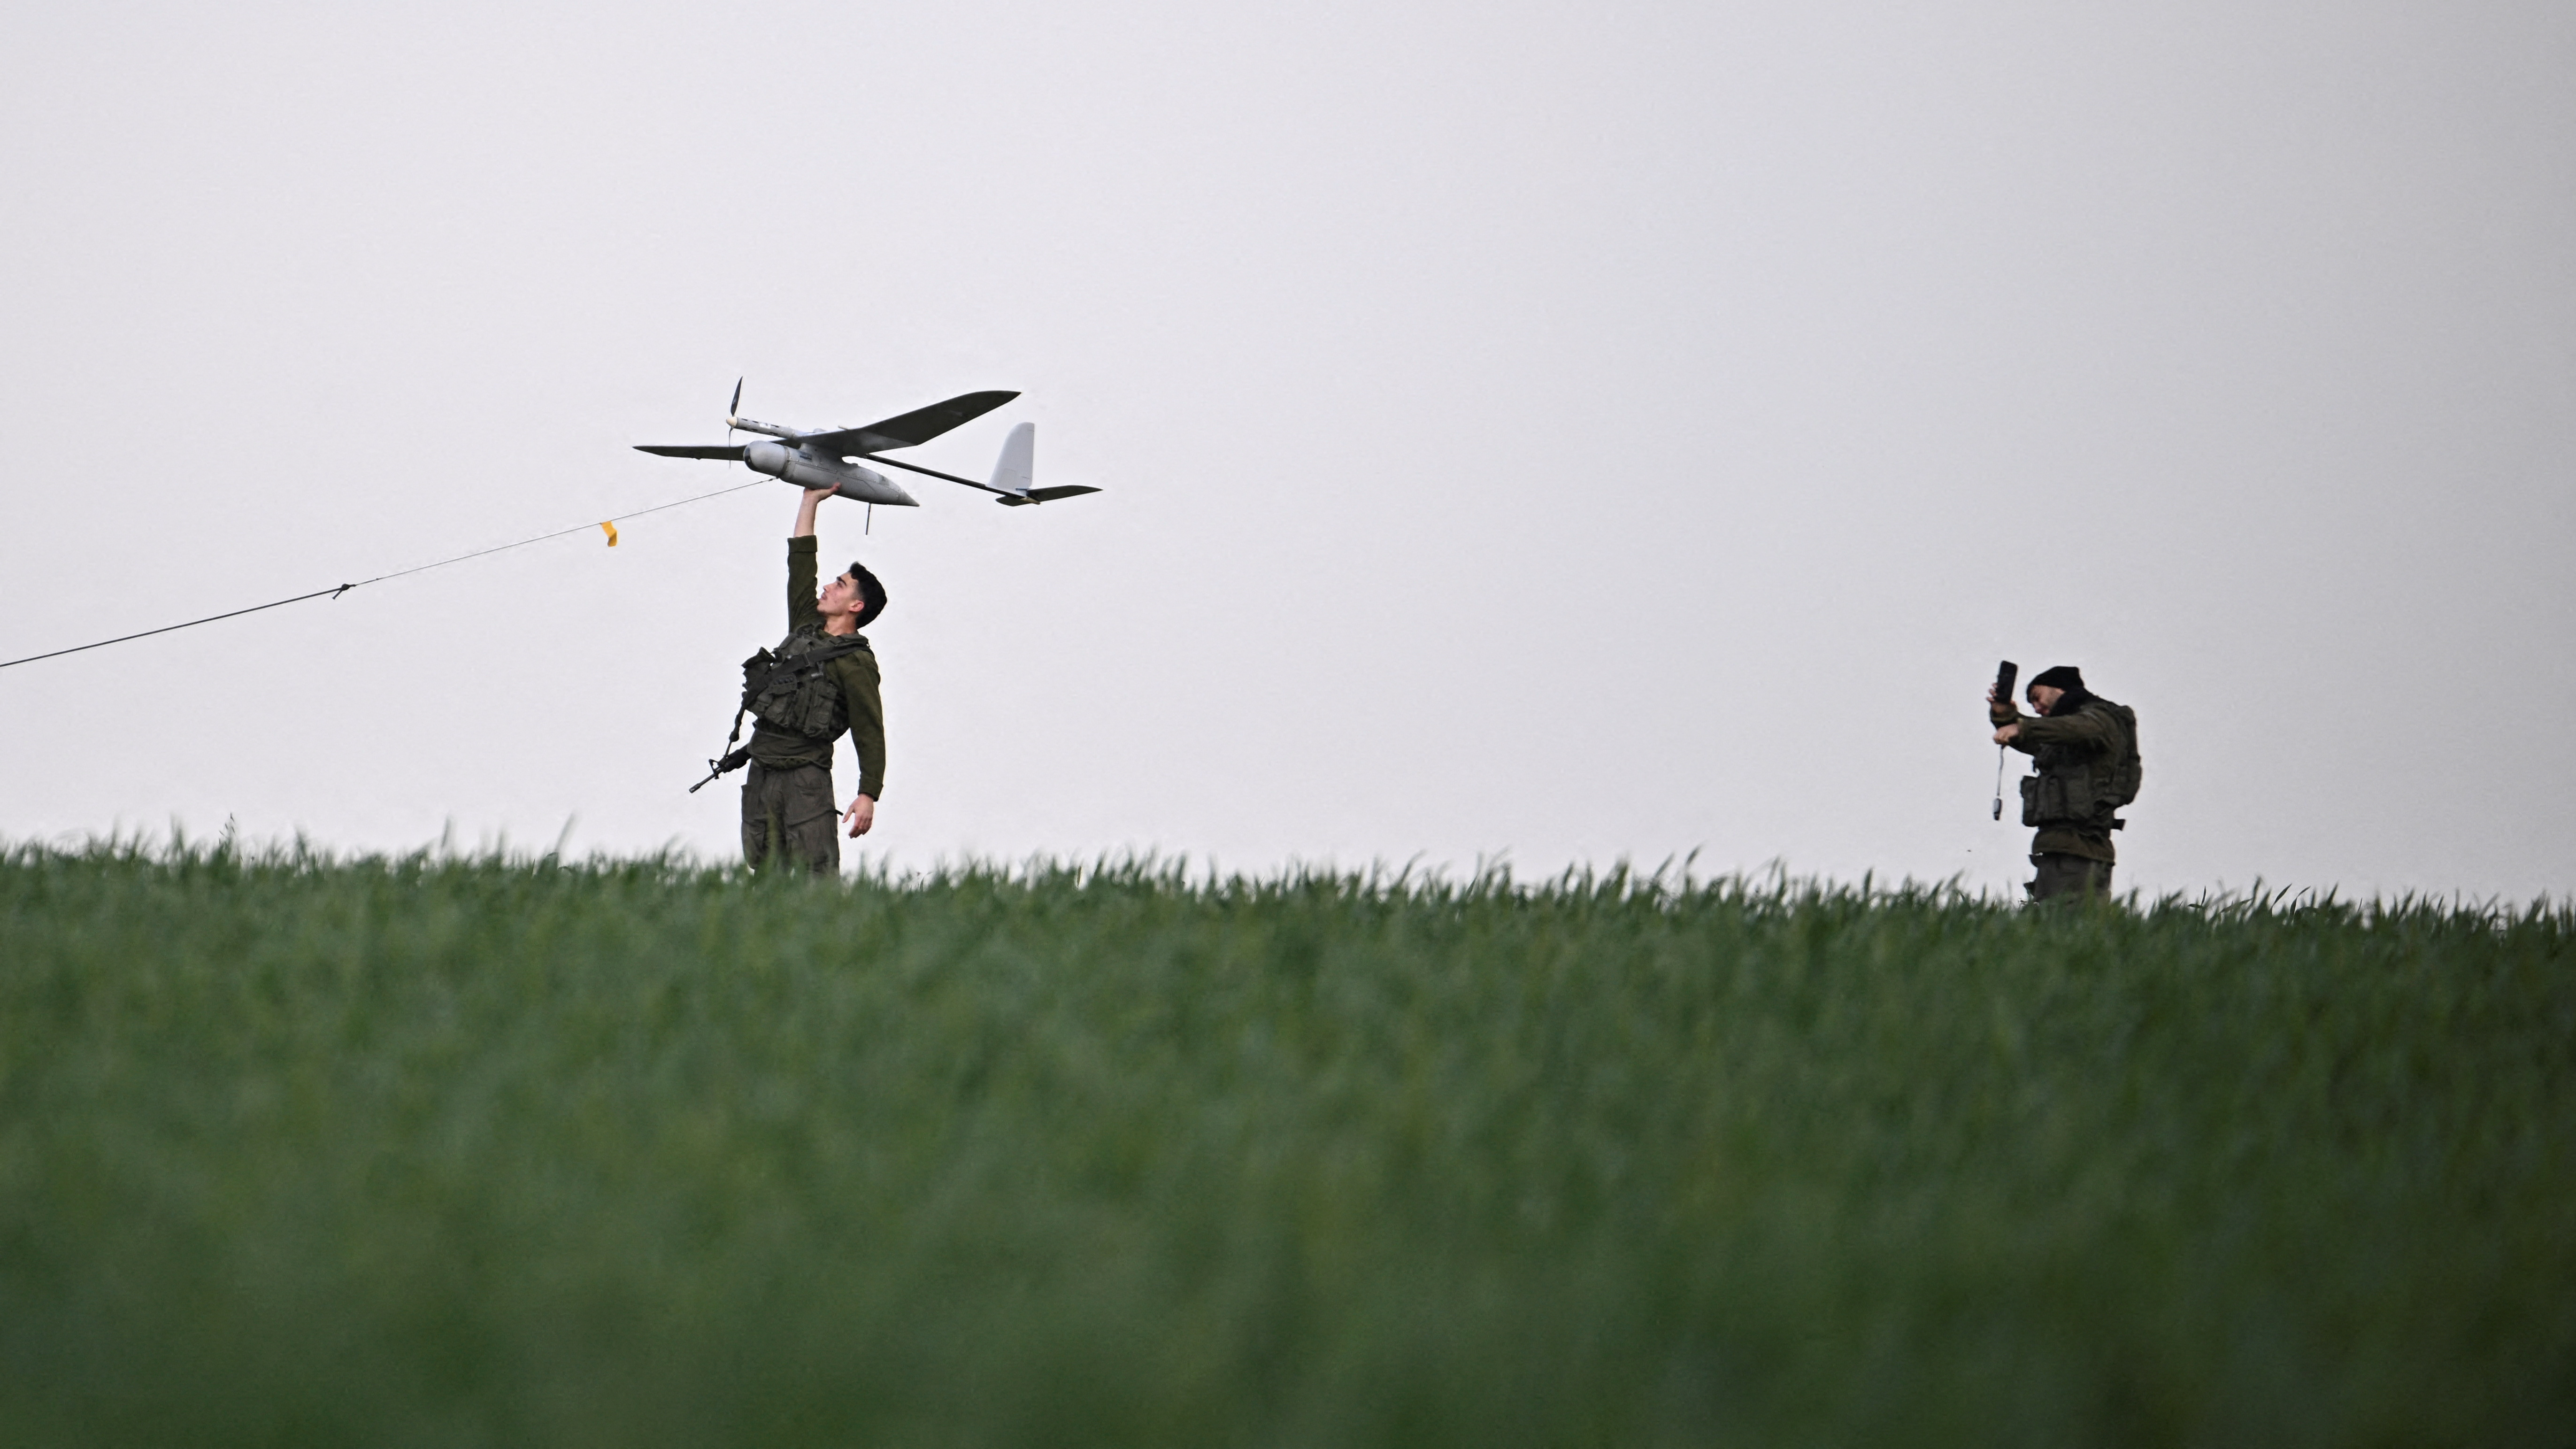 IDF soldiers launch a surveillance drone. /Dylan Martinez/Reuters